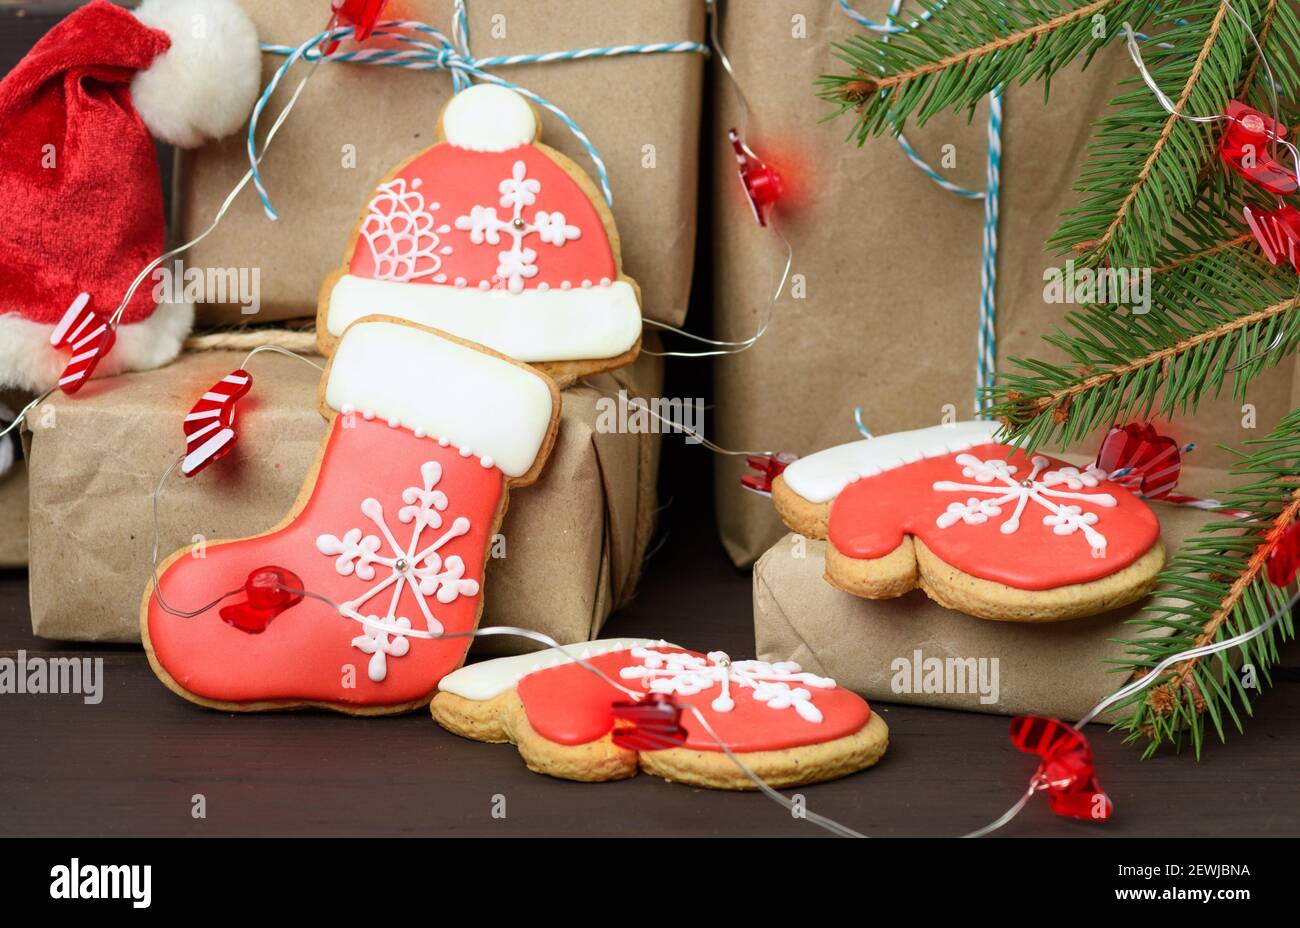 Geschenkbox und gebackene Weihnachts Lebkuchen, brennende Feiertagslichter  auf einem braunen Tisch Stockfotografie - Alamy